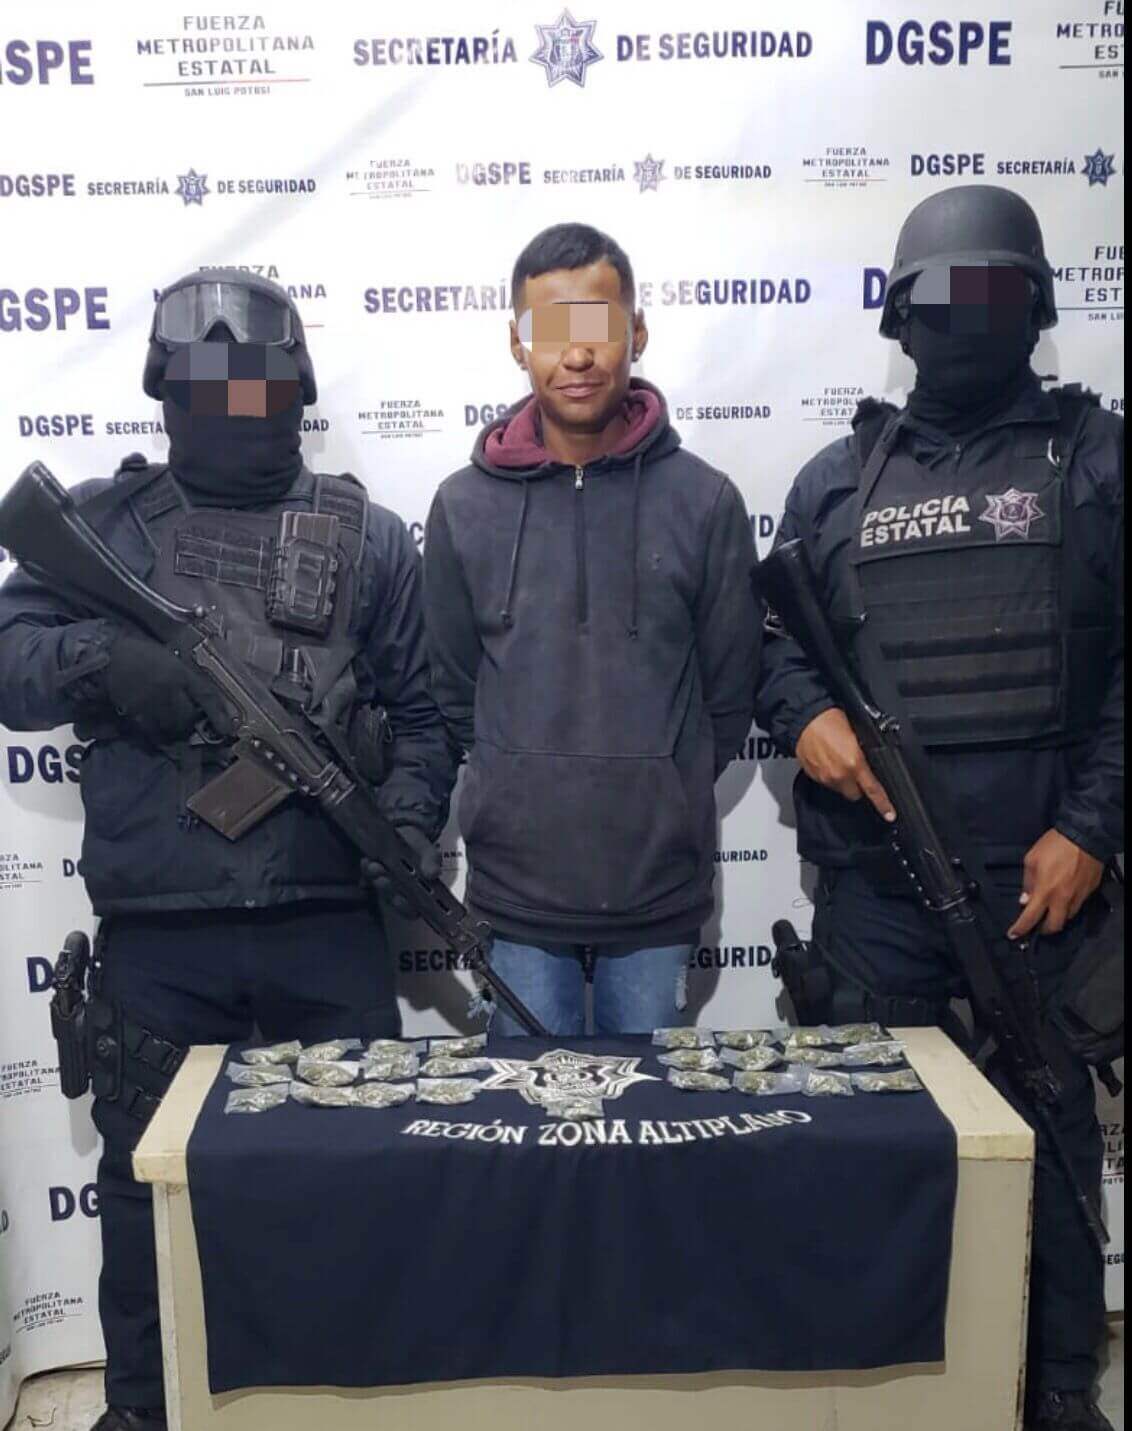 Parte del operativo “Matehuala Seguro”, agentes de la Policía Estatal detuvieron a un joven con 25 bolsas de droga.